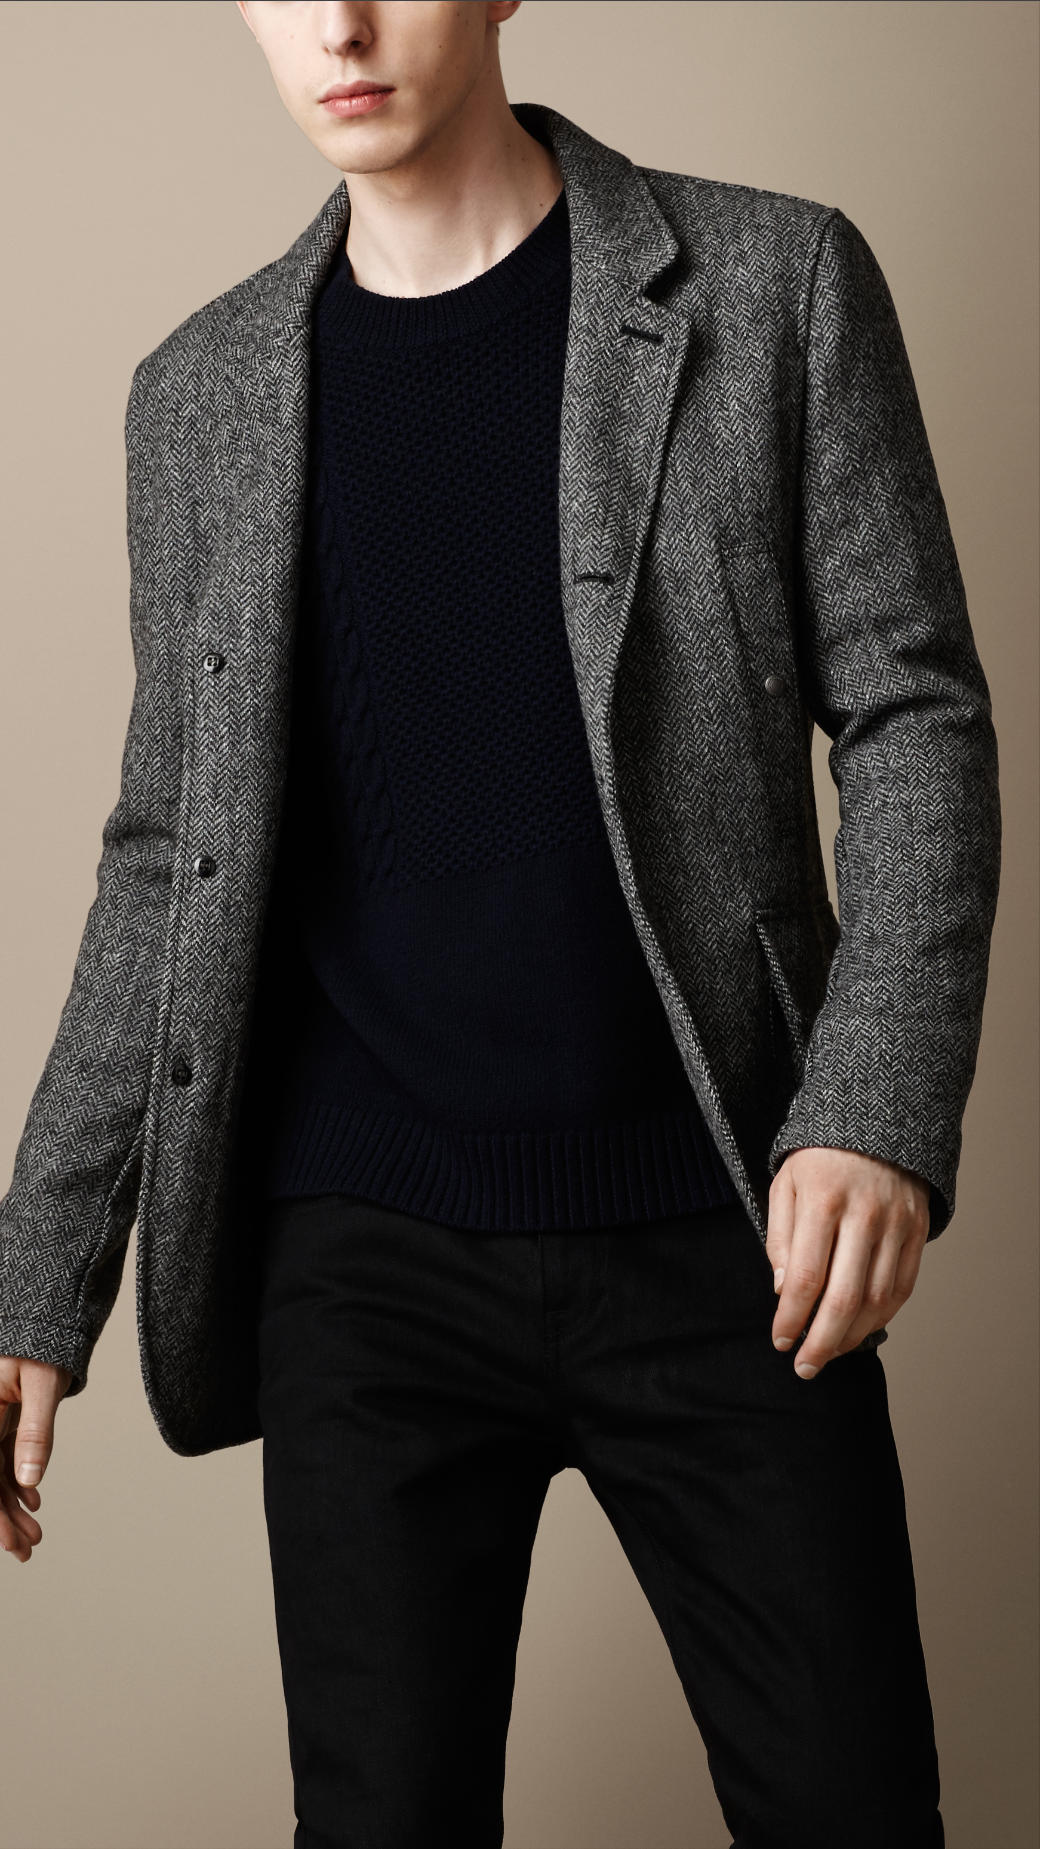 Burberry Herringbone Tweed Jacket in Dark Grey Melange (Gray) for Men - Lyst